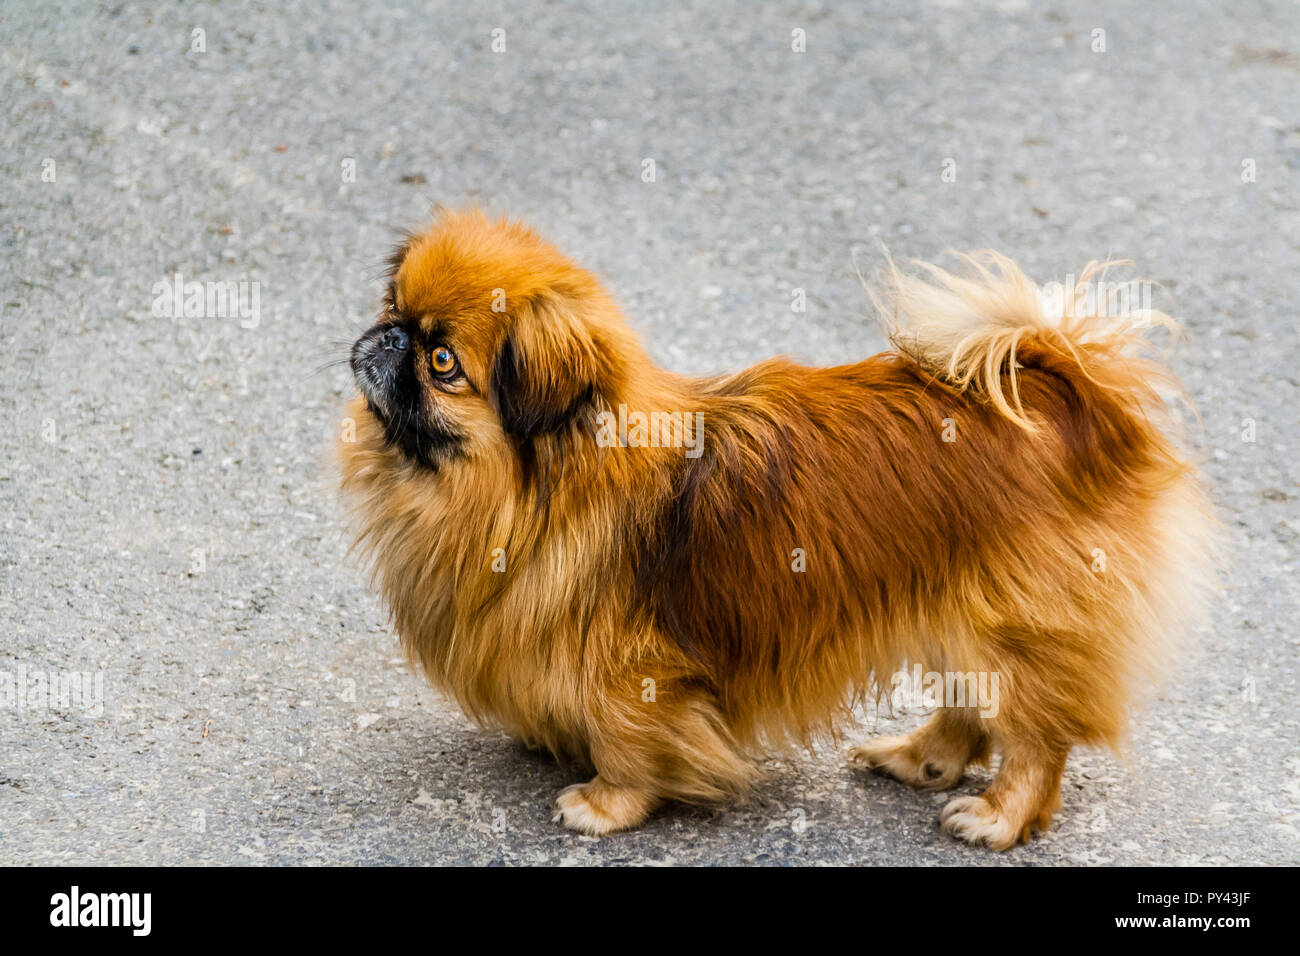 Ginger Pekinese dog, looking up. Stock Photo